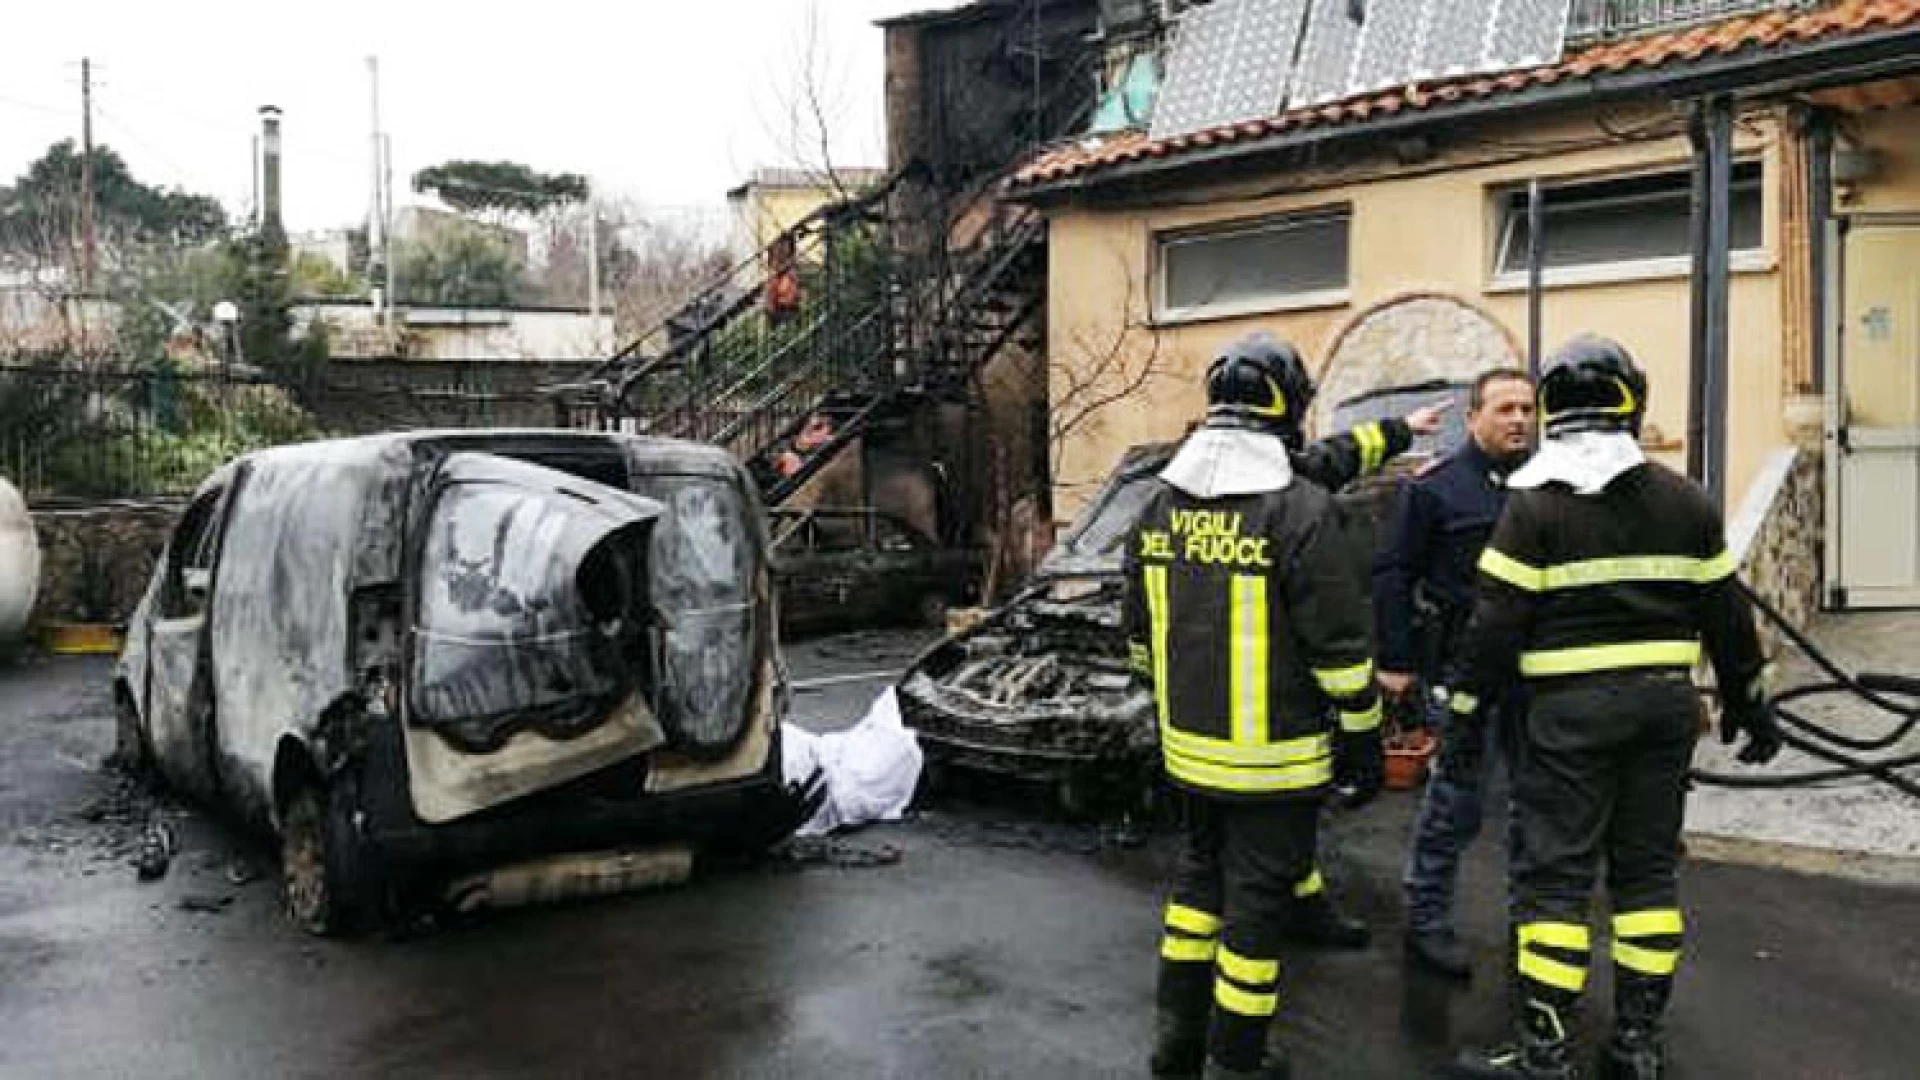 Napoli, esplode bombolone del gas nella zona Camaldoli. Ferito gravemente un operaio residente a Colli a Volturno.